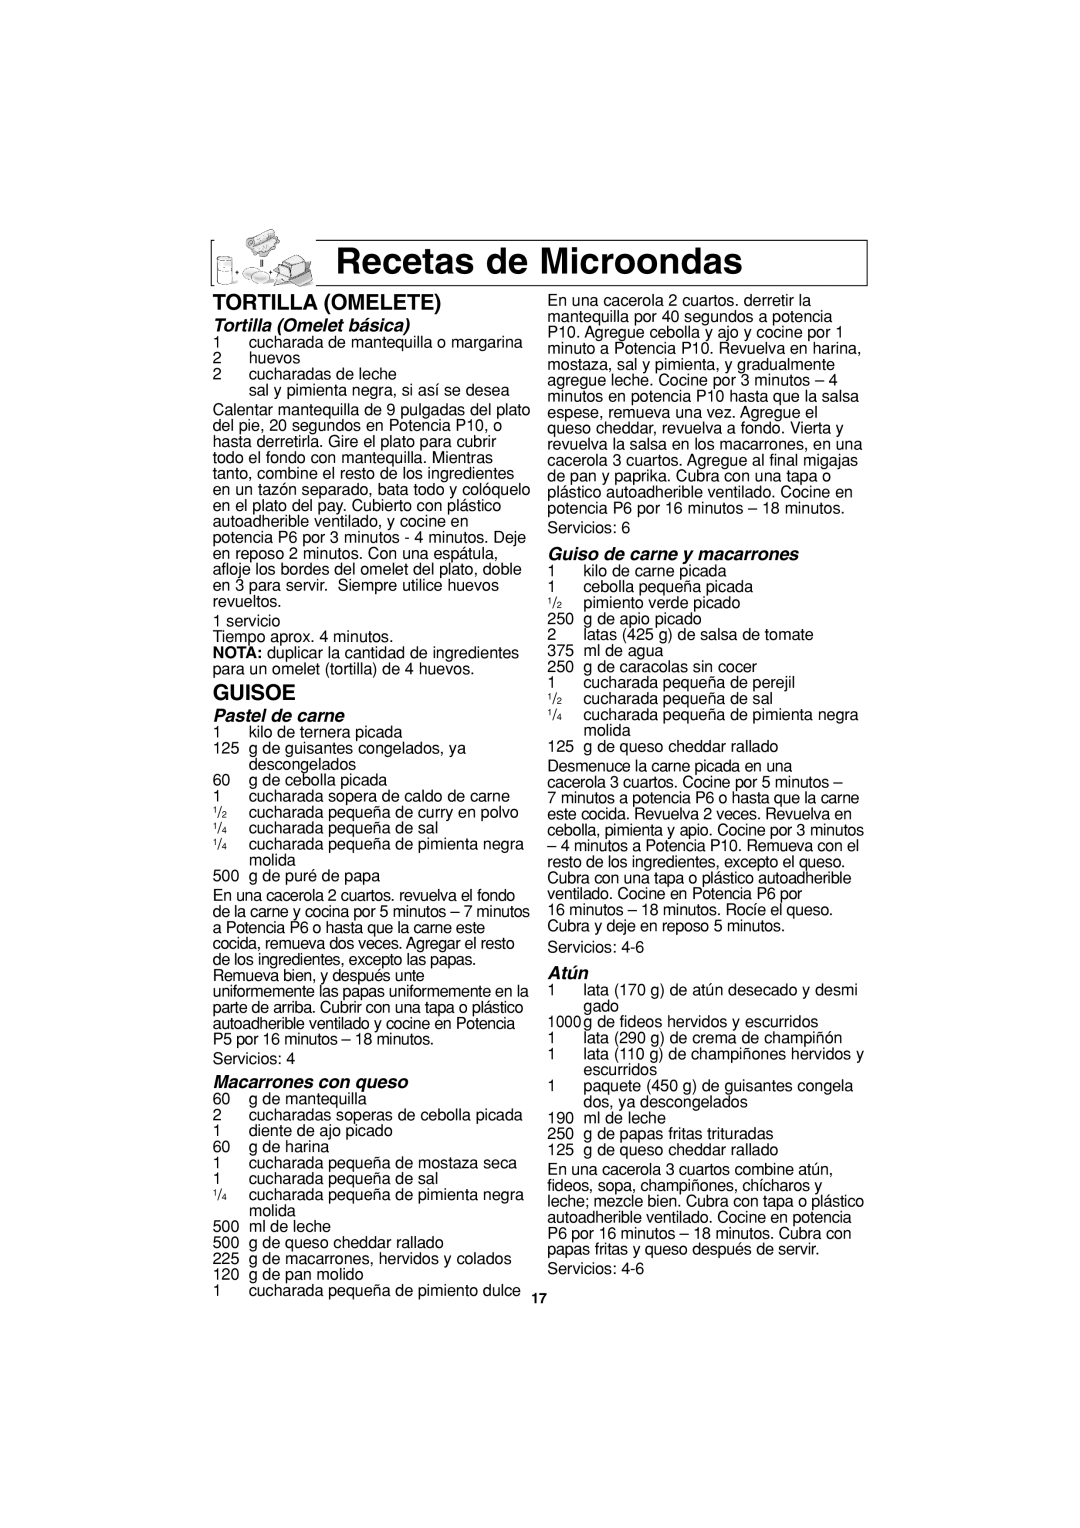 Panasonic NN-S443 Recetas de Microondas, Tortilla Omelete, Guisoe, Tortilla Omelet básica, Pastel de carne, Atún 